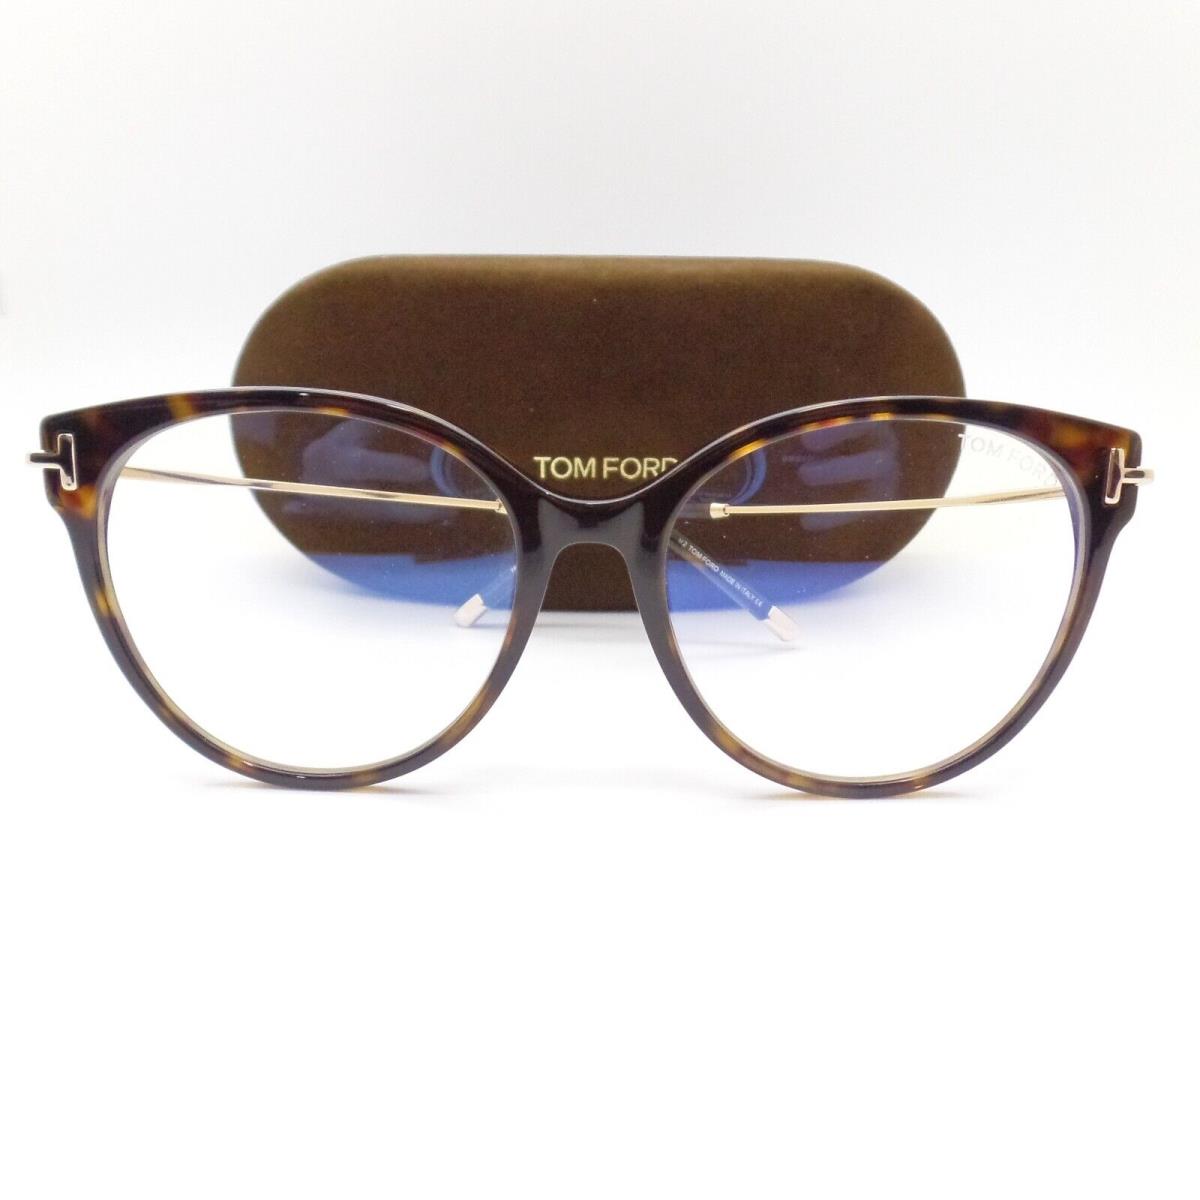 Tom Ford eyeglasses  - Havana Frame